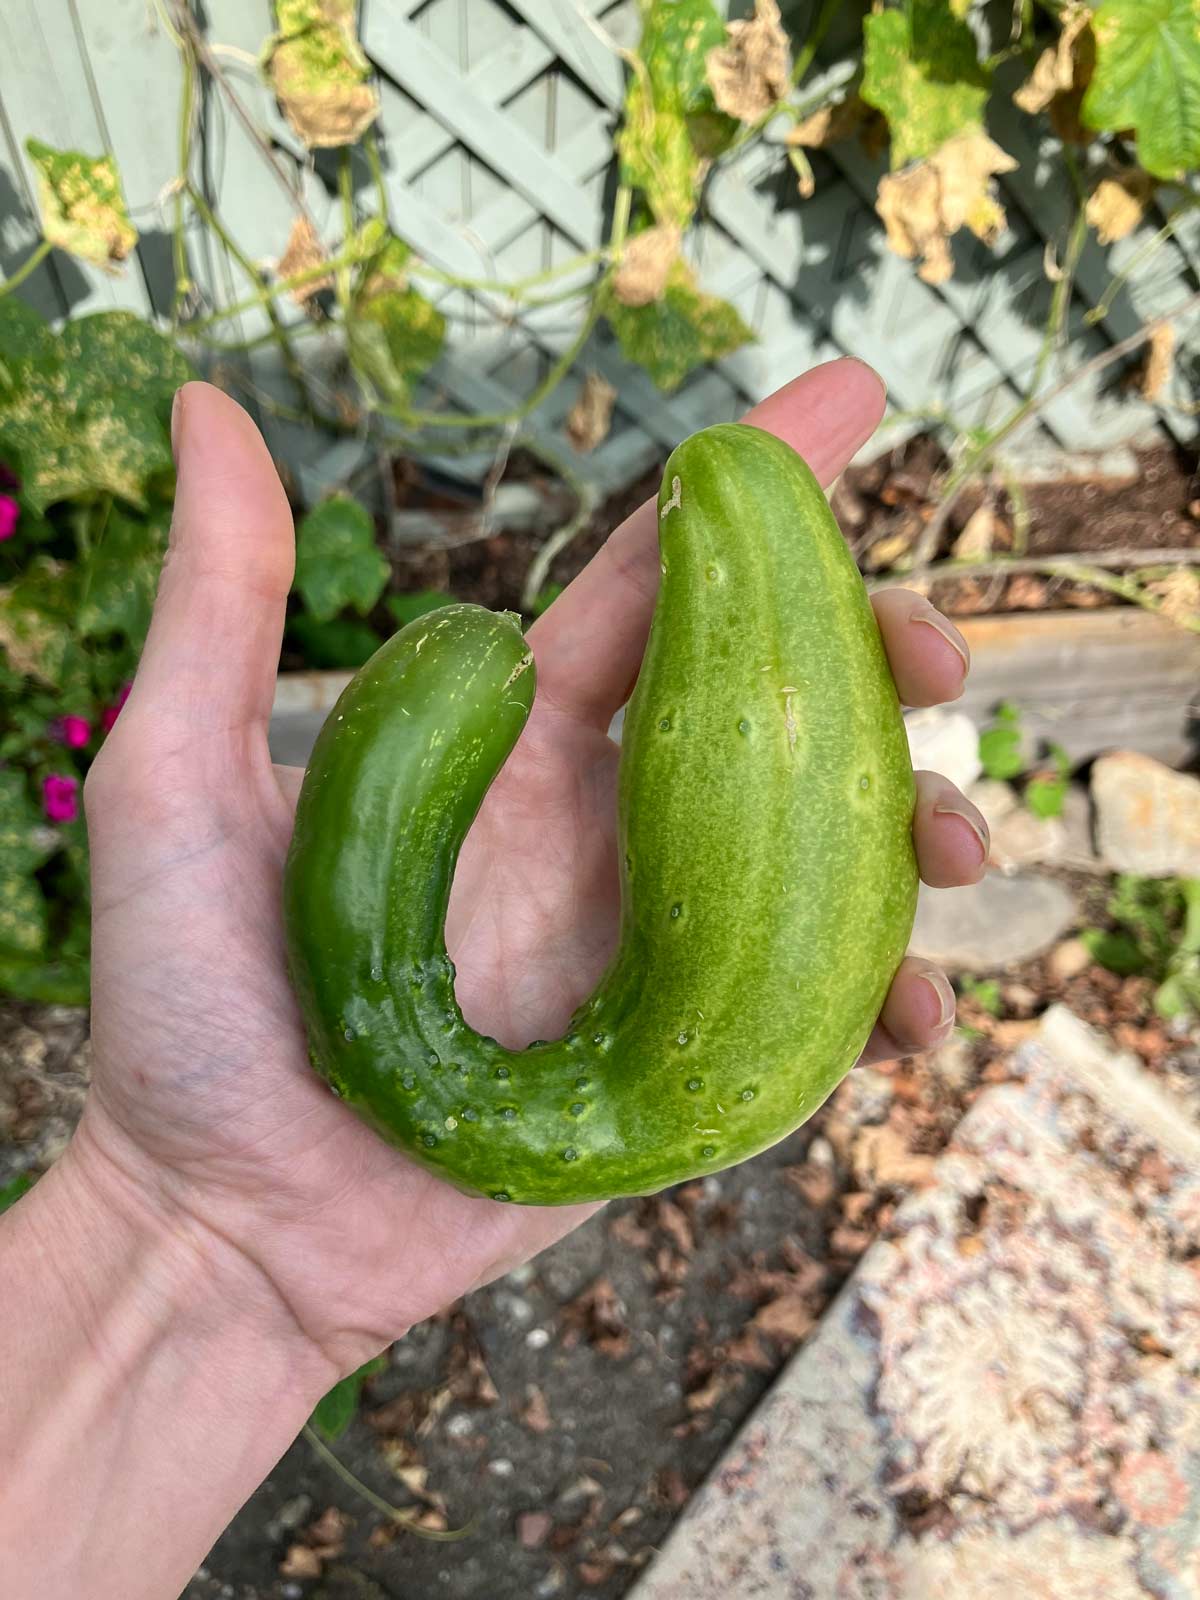 This cucumber I grew